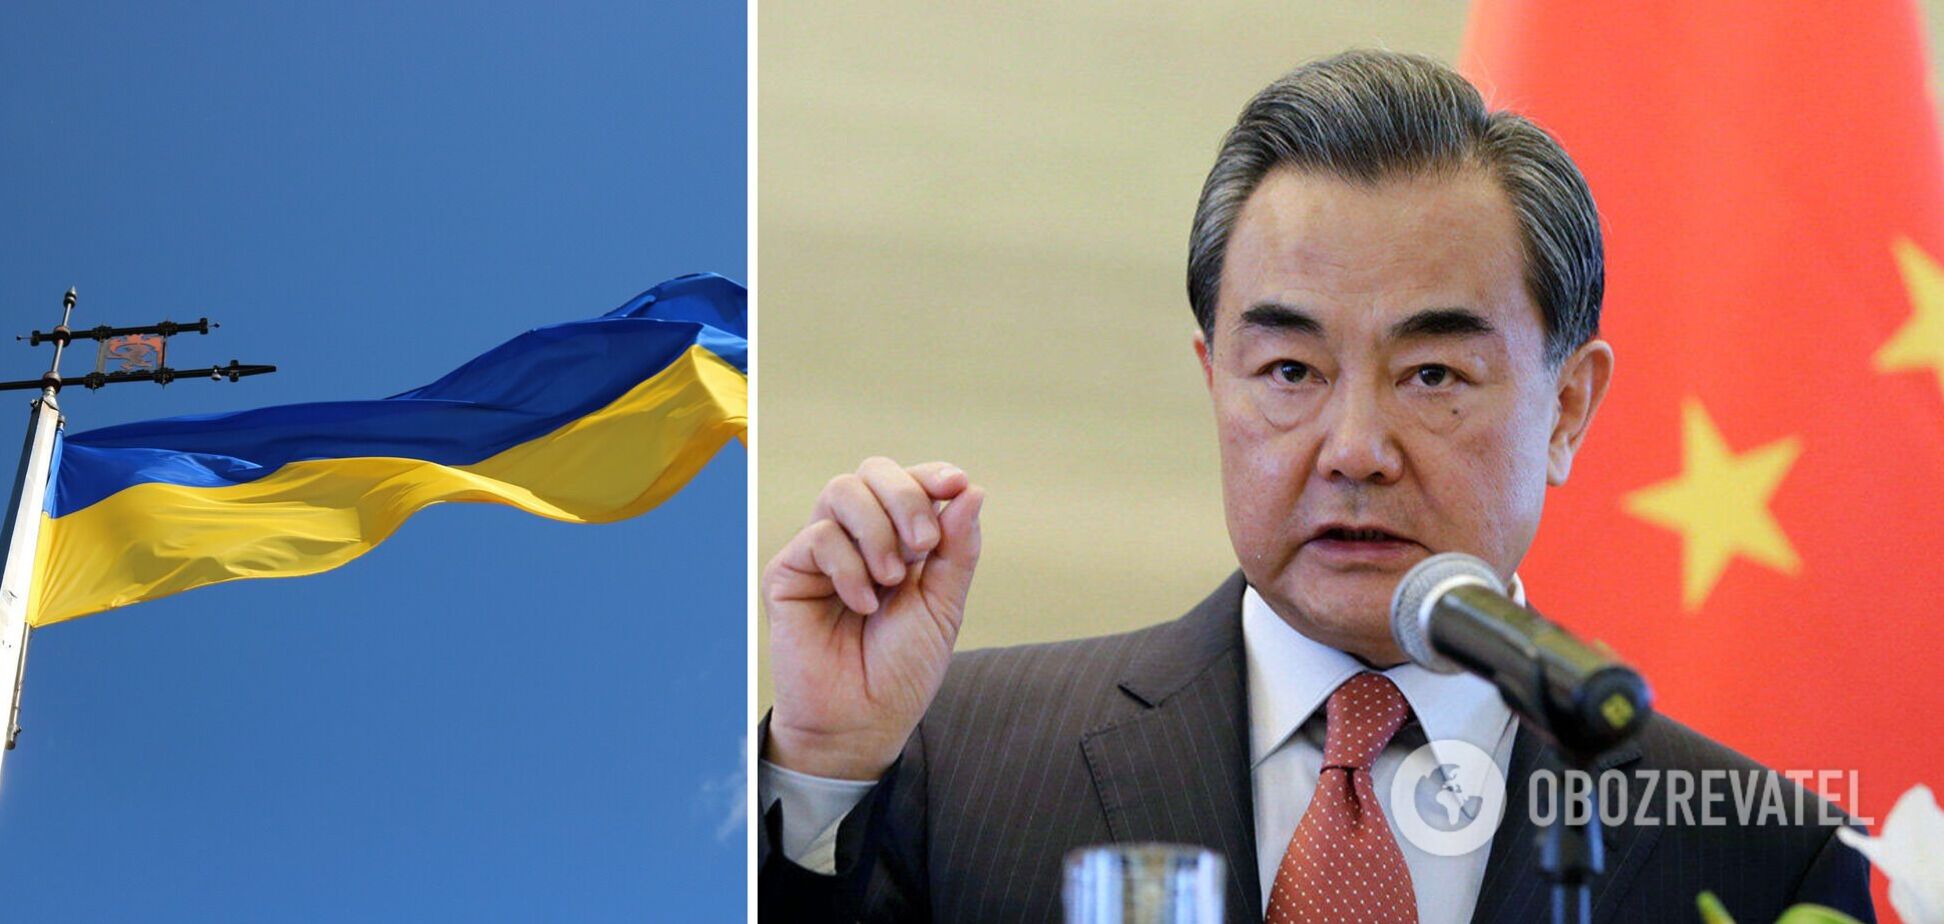 Китай став на бік України, підтримавши її територіальну цілісність